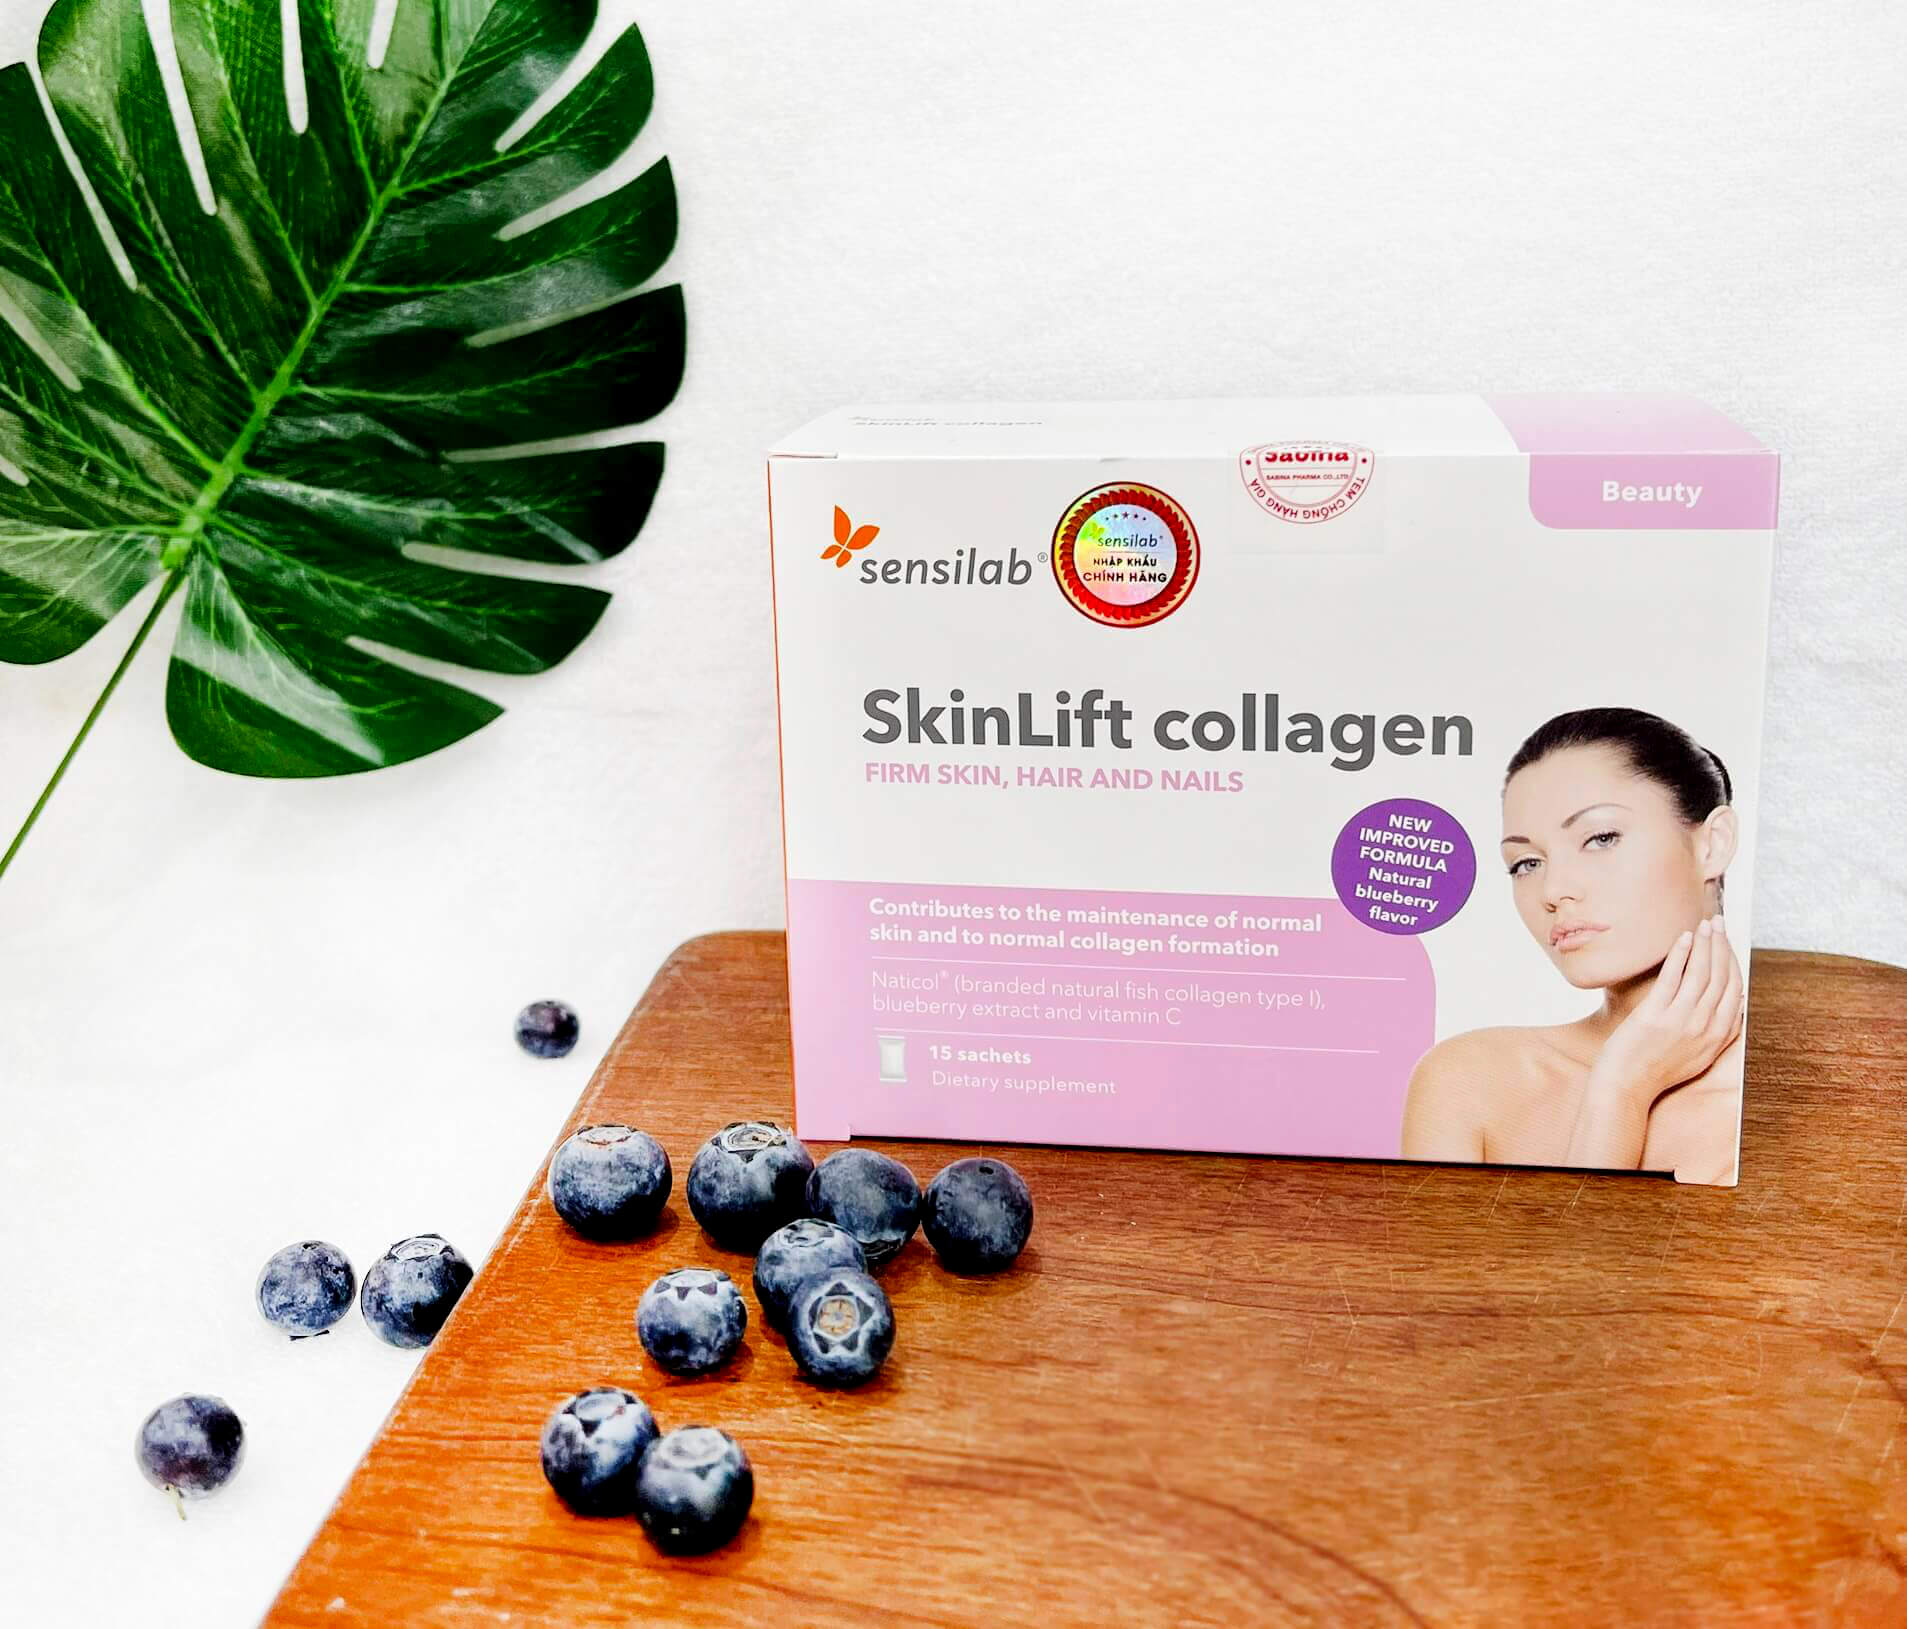 Vì sao da bị mất collagen ở tuổi 30 bạn đã biết chưa?